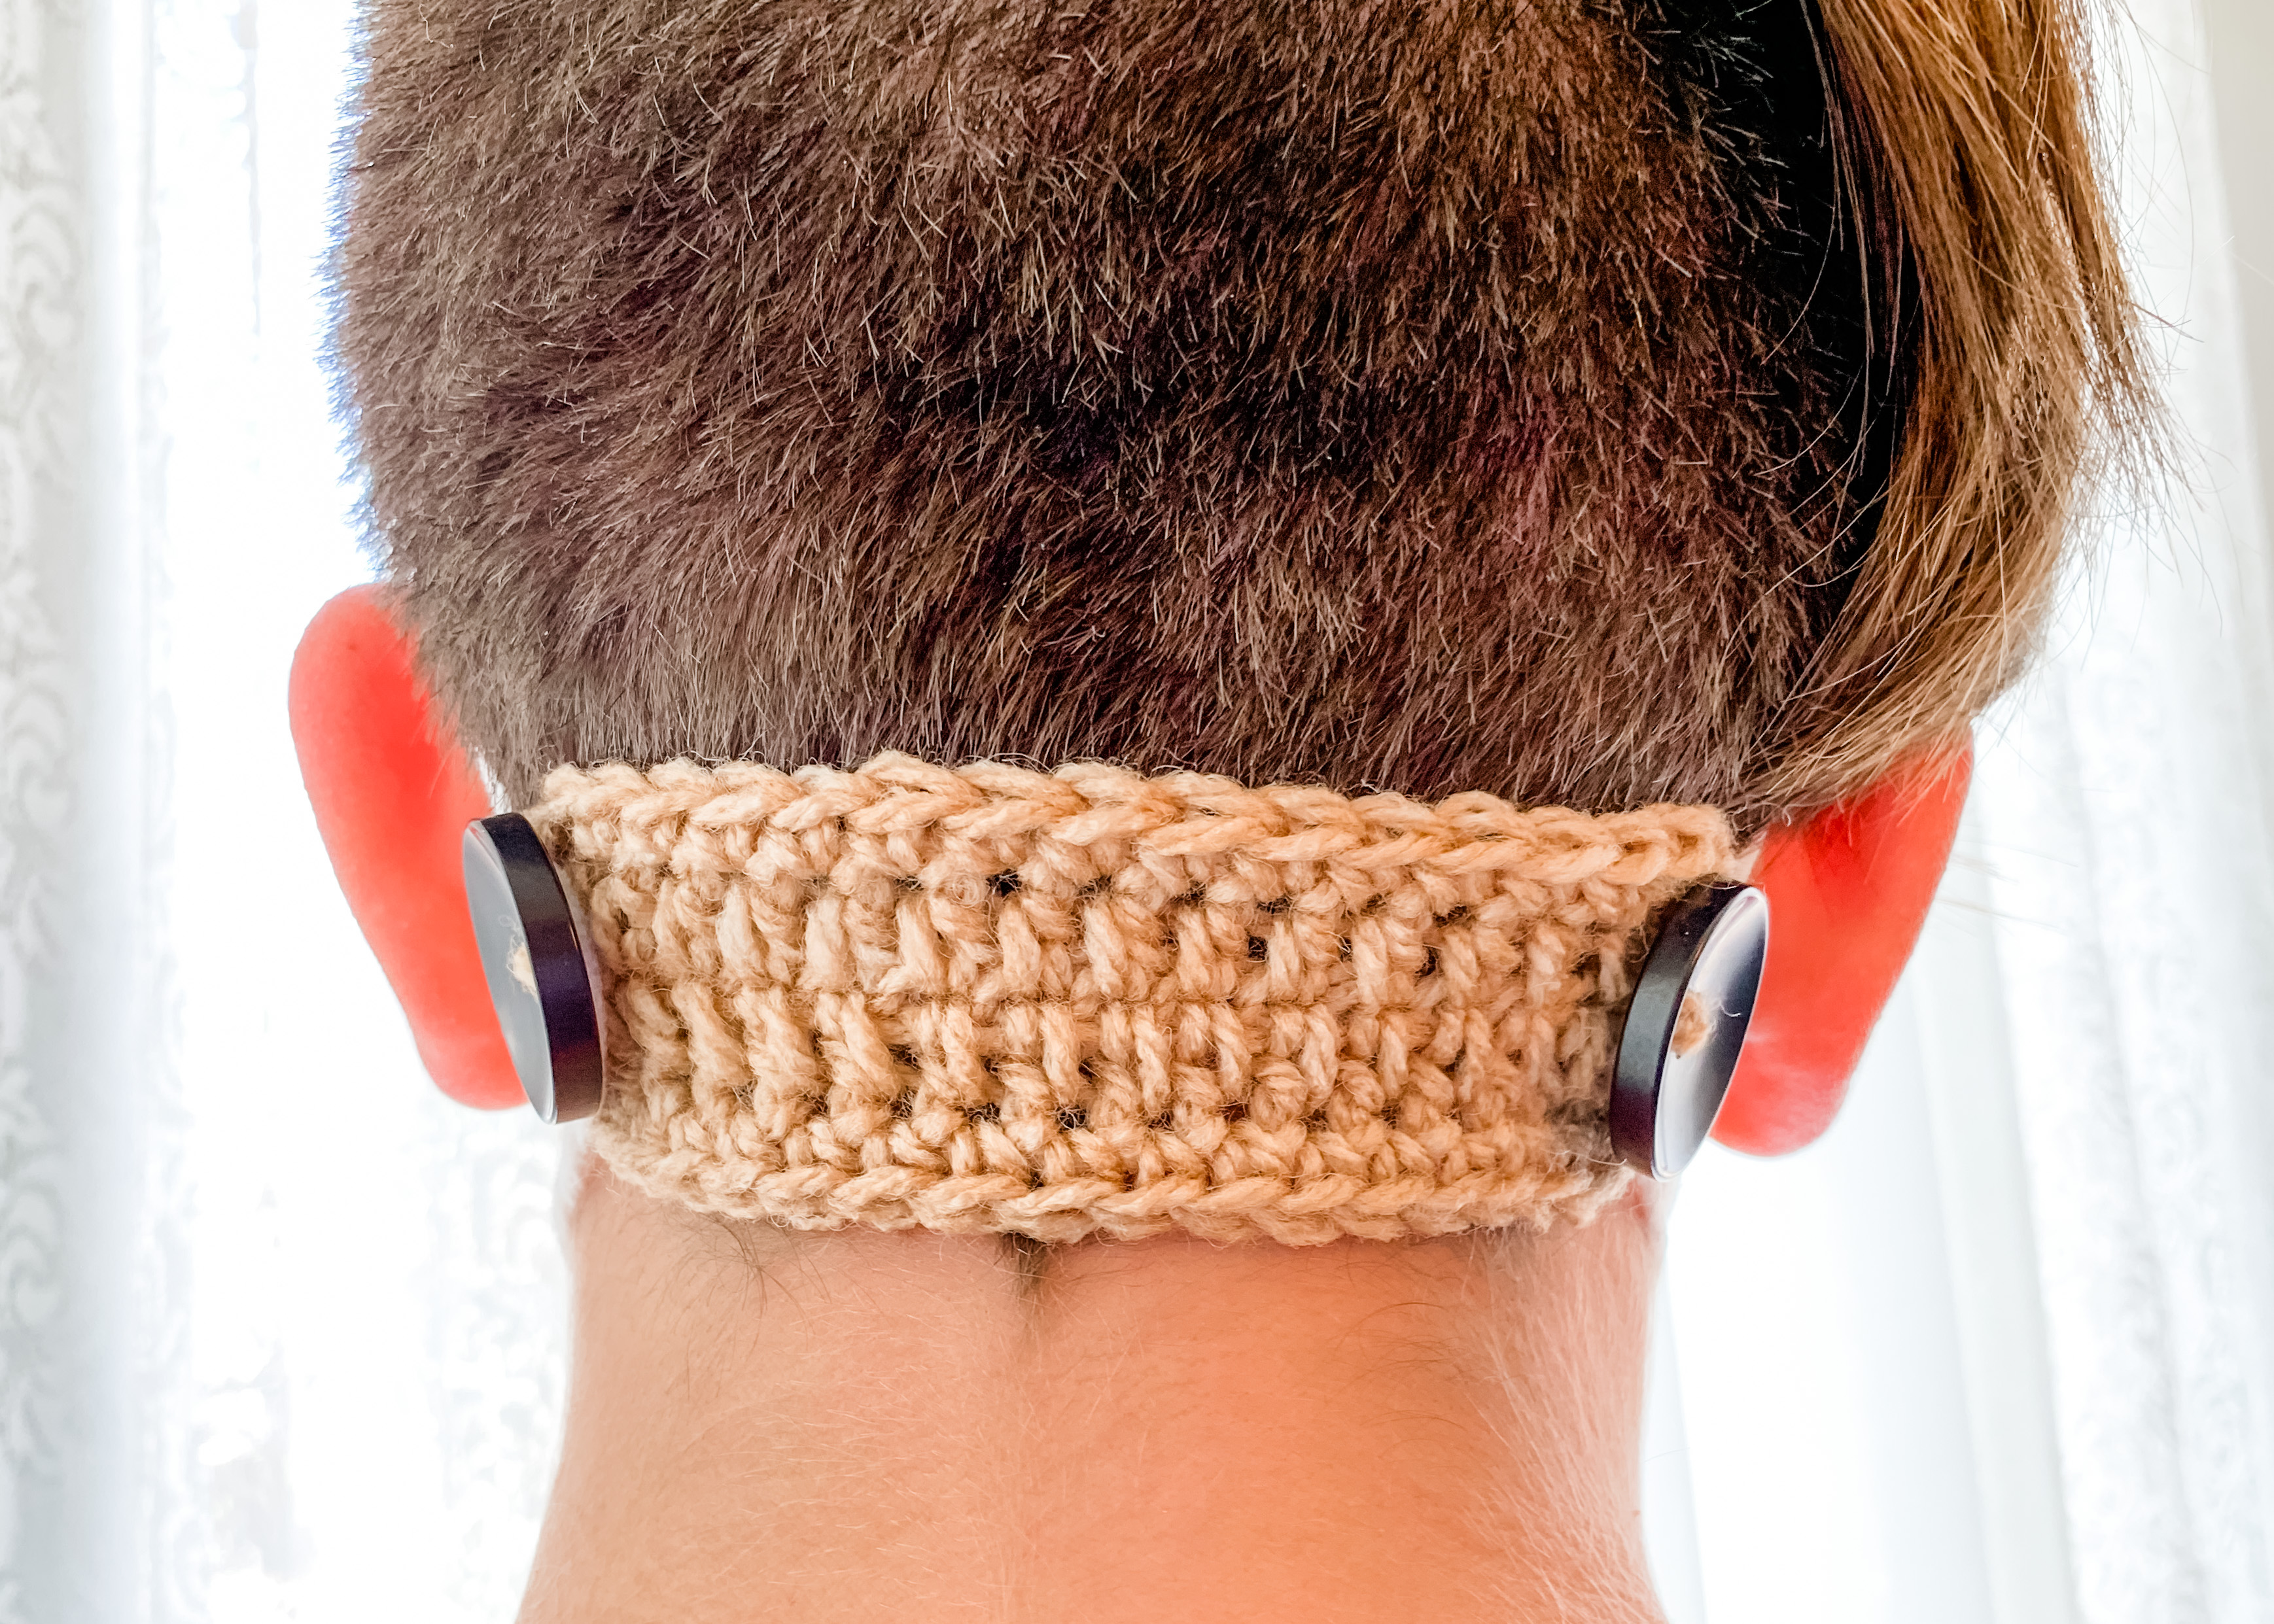 Crochet Rochelle: Ear Saver Mask Buddy